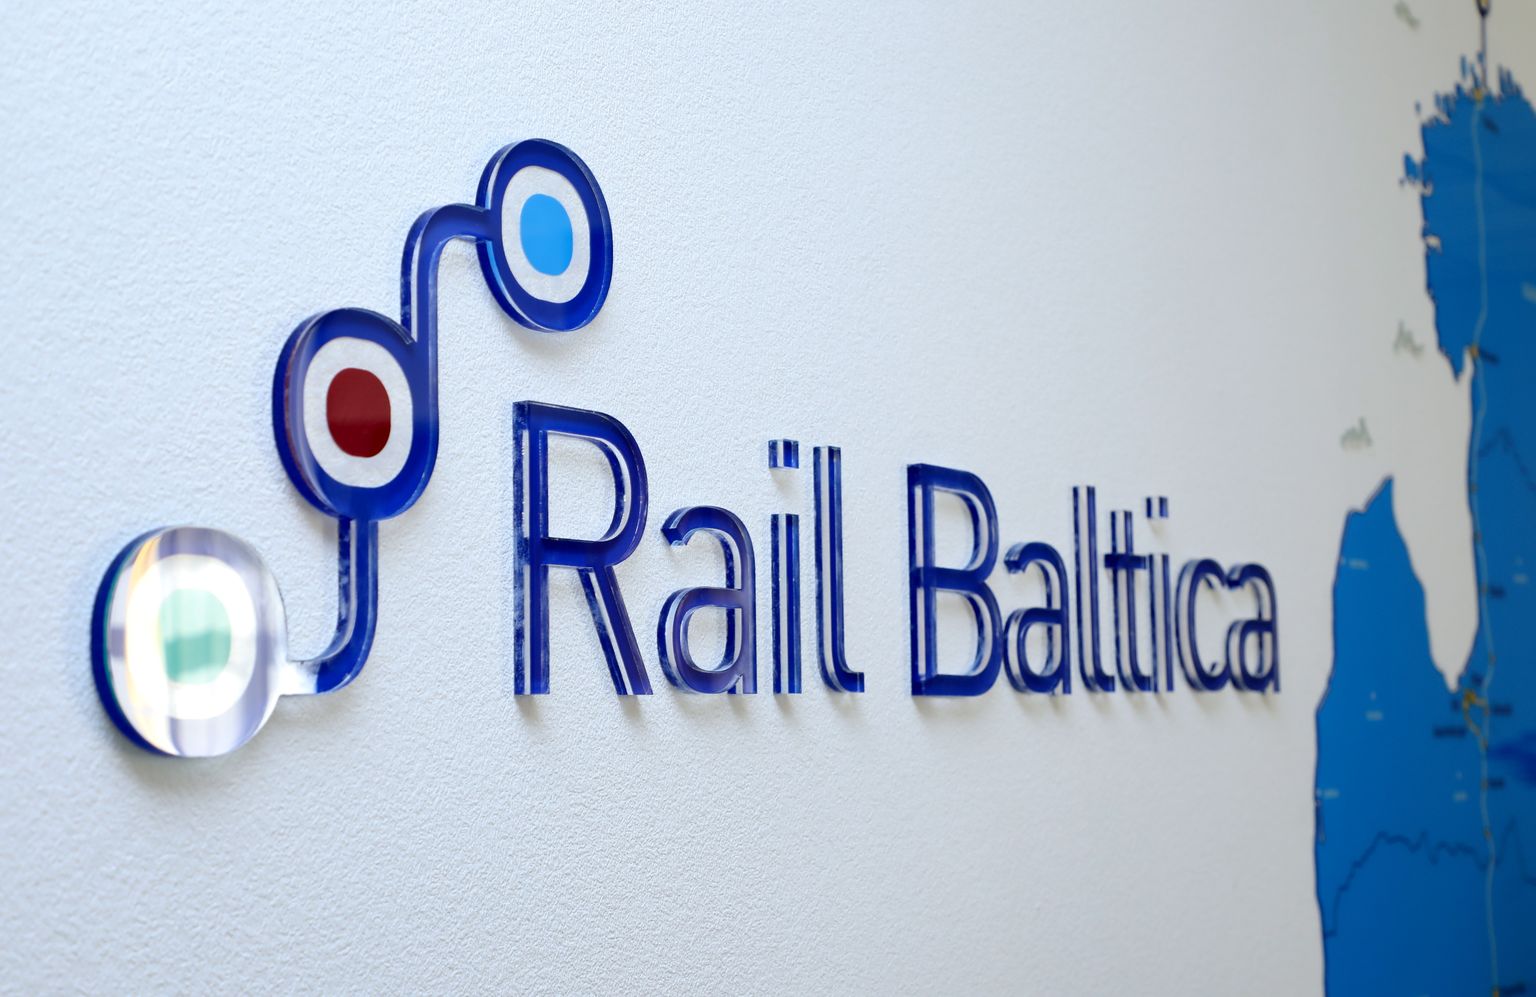 "Rail Baltica" logo.